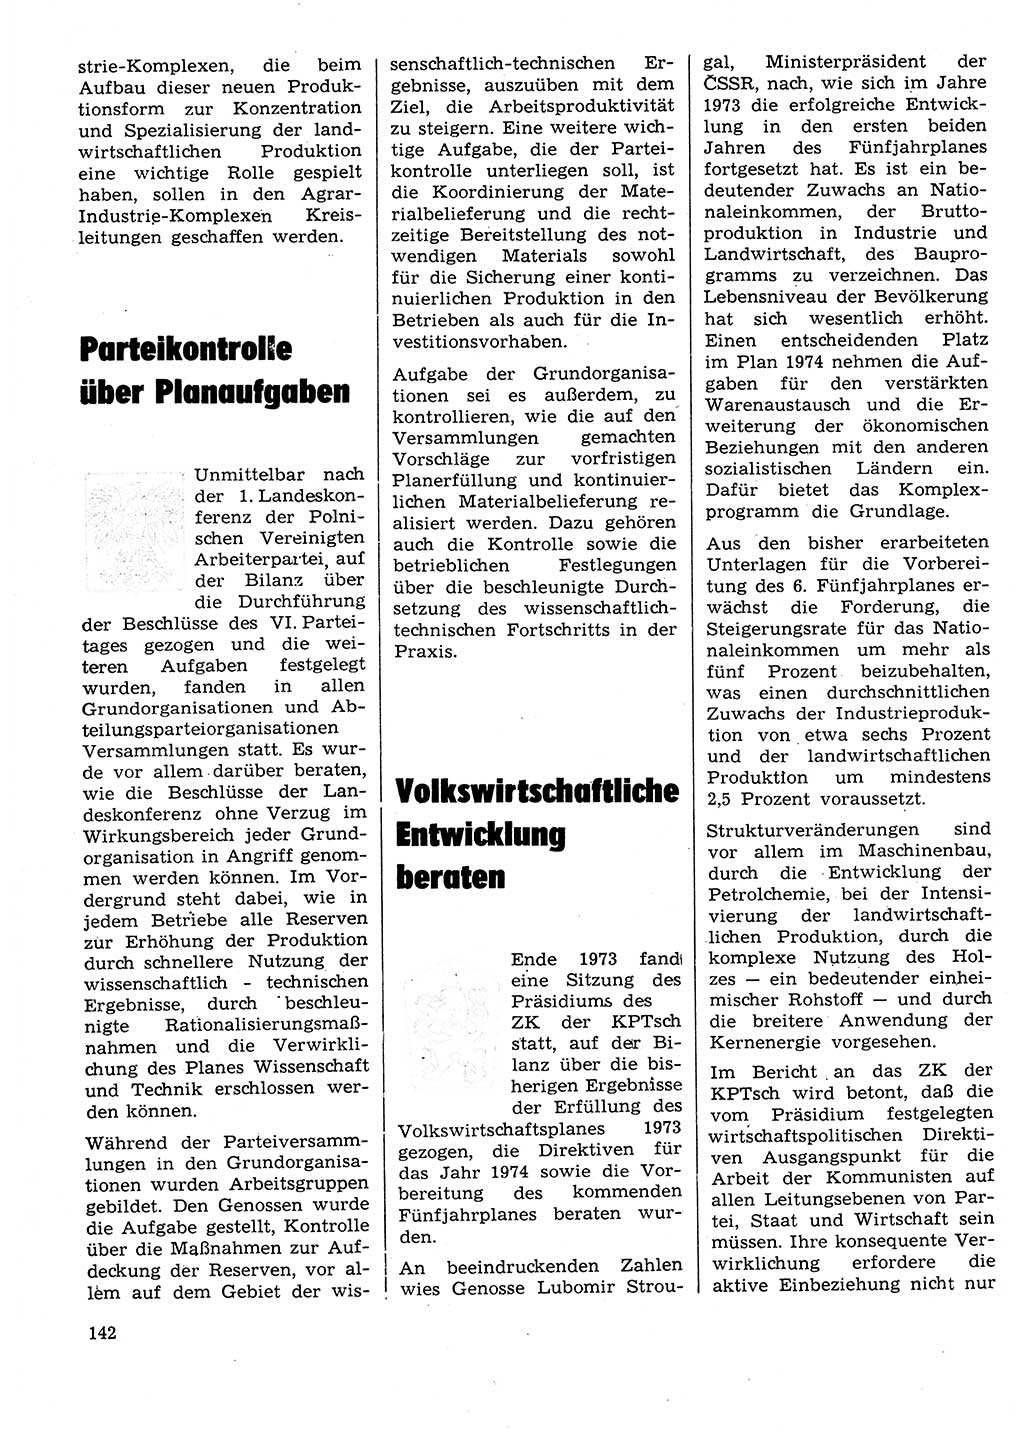 Neuer Weg (NW), Organ des Zentralkomitees (ZK) der SED (Sozialistische Einheitspartei Deutschlands) für Fragen des Parteilebens, 29. Jahrgang [Deutsche Demokratische Republik (DDR)] 1974, Seite 142 (NW ZK SED DDR 1974, S. 142)